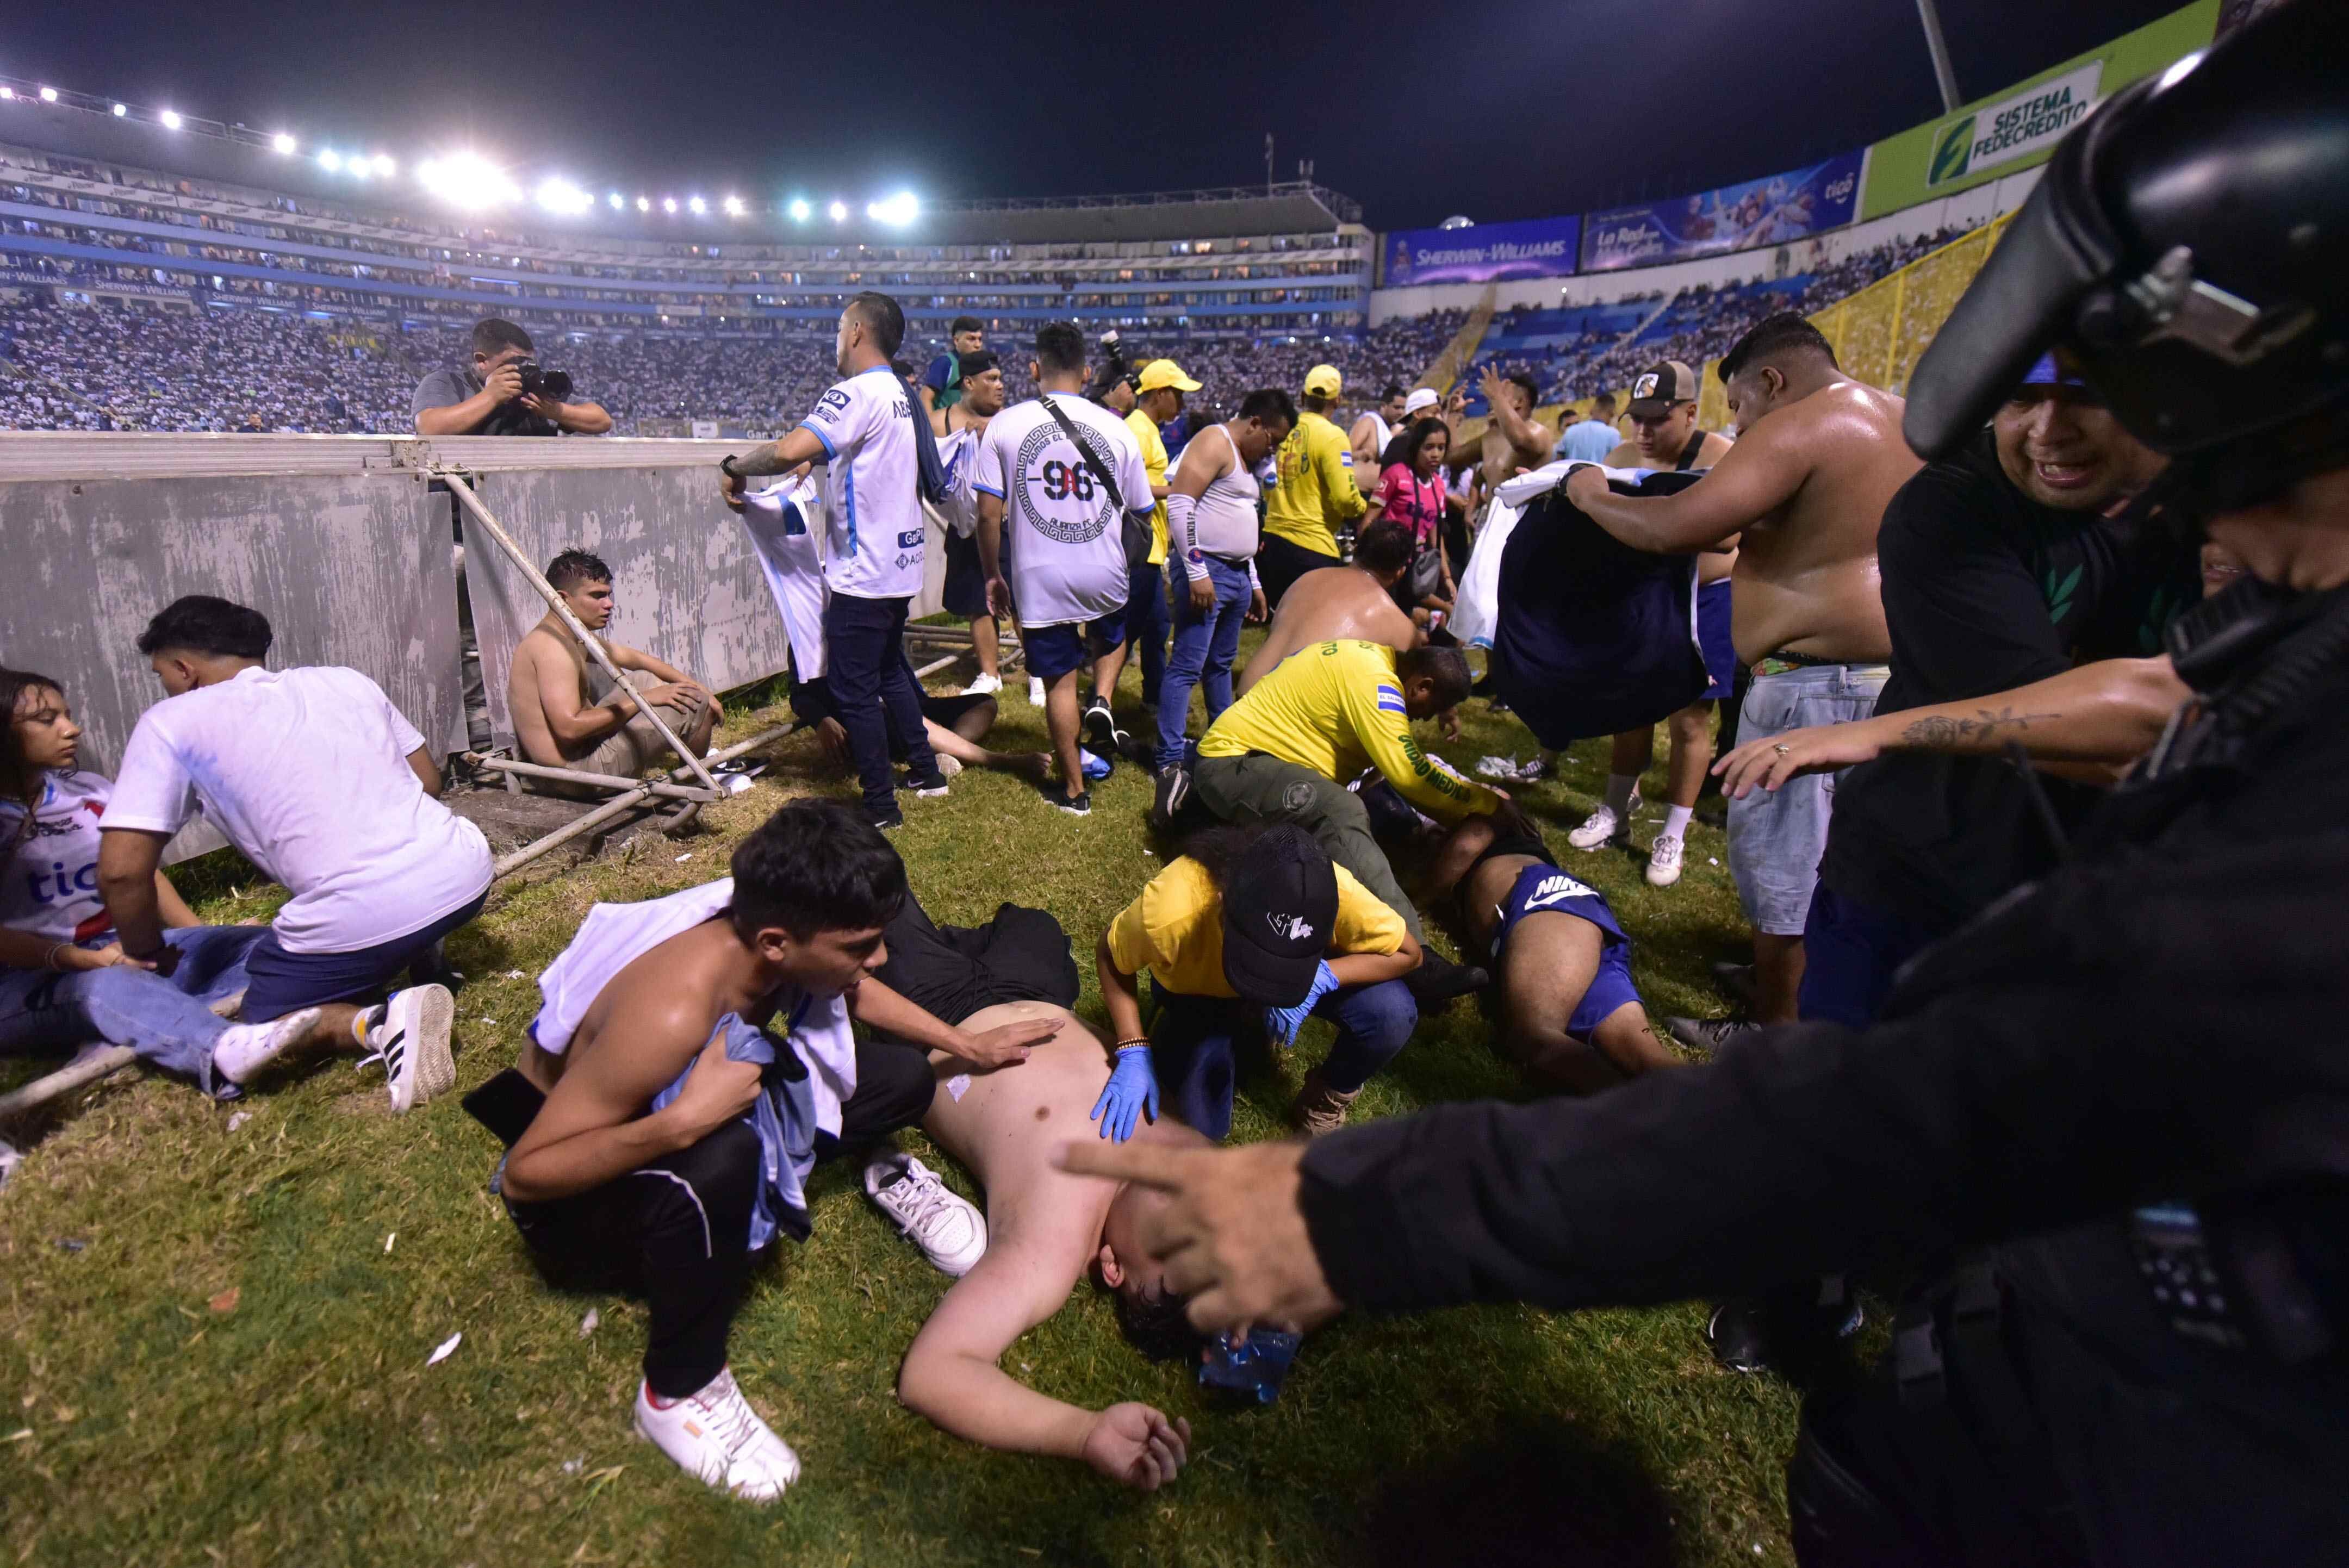 Alrededor de 100 personas salieron heridas tras una estampida en un estadio de futbol en El Salvador. (Foto: EFE / Miguel Lemus)